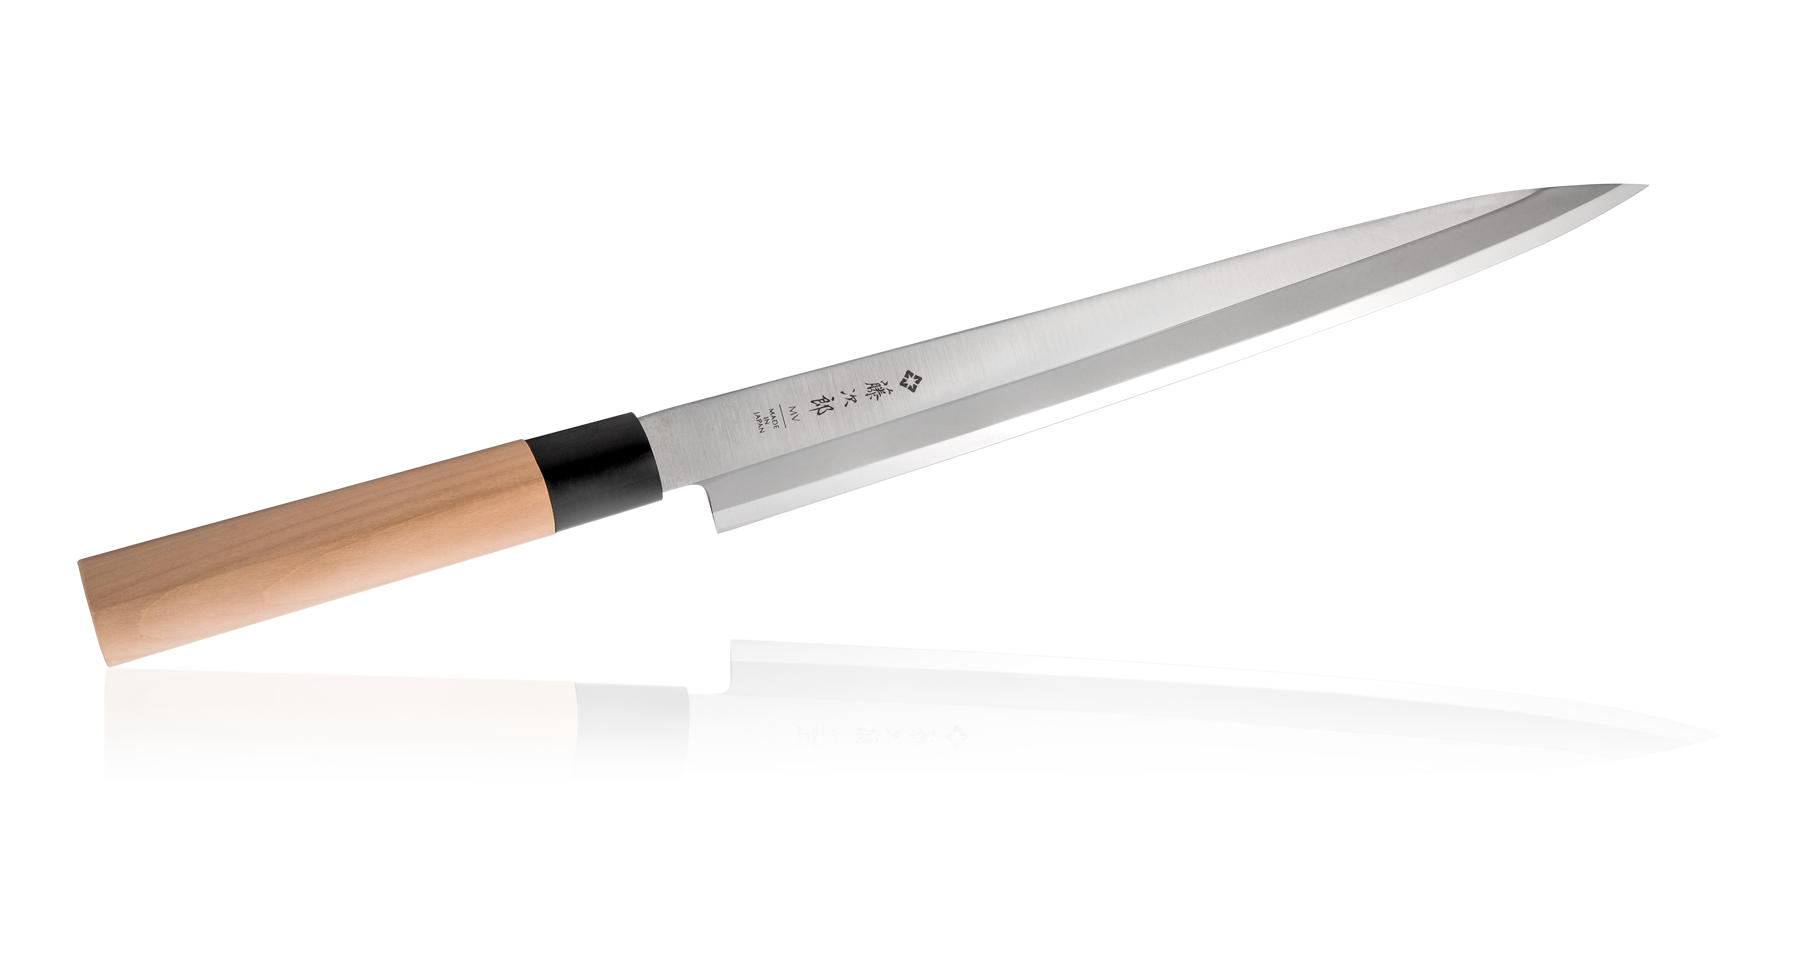 Coltelli da Сucina Giapponesi Tojiro - Per Sushi E Sashimi Professionale - Acciaio al Molibdeno Vanadio - Lama Ultra Affilata - Manico in Legno - dal Giappone (Yanagiba 30 cm, F-1059)